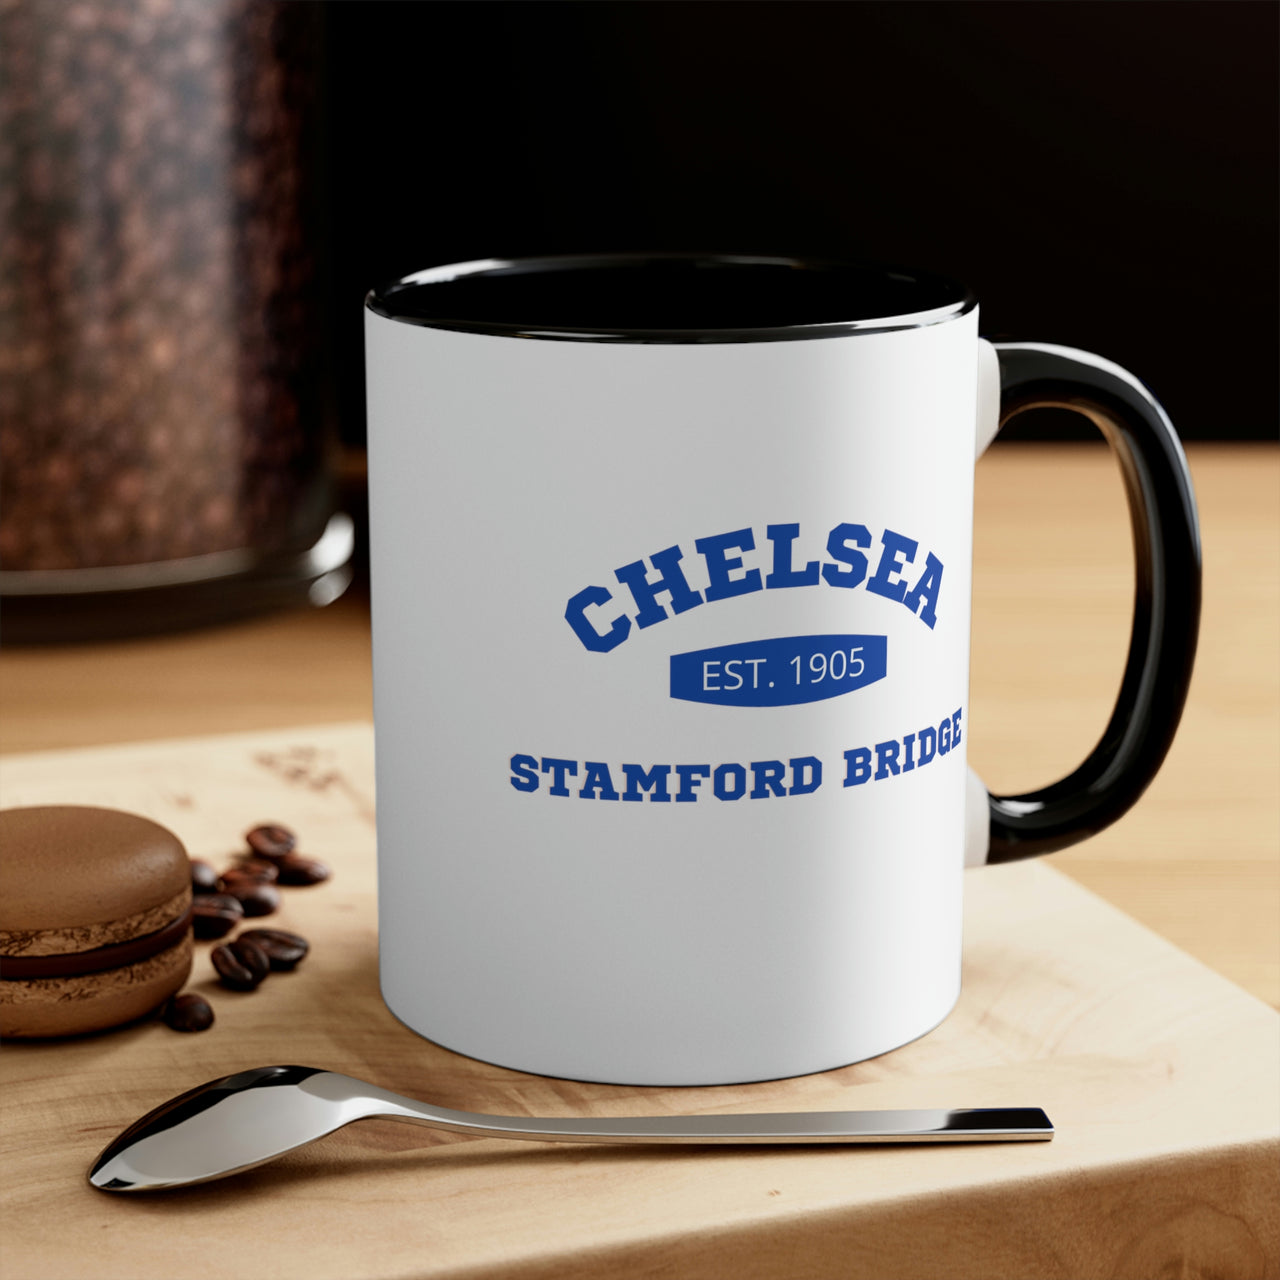 Chelsea Coffee Mug, 11oz